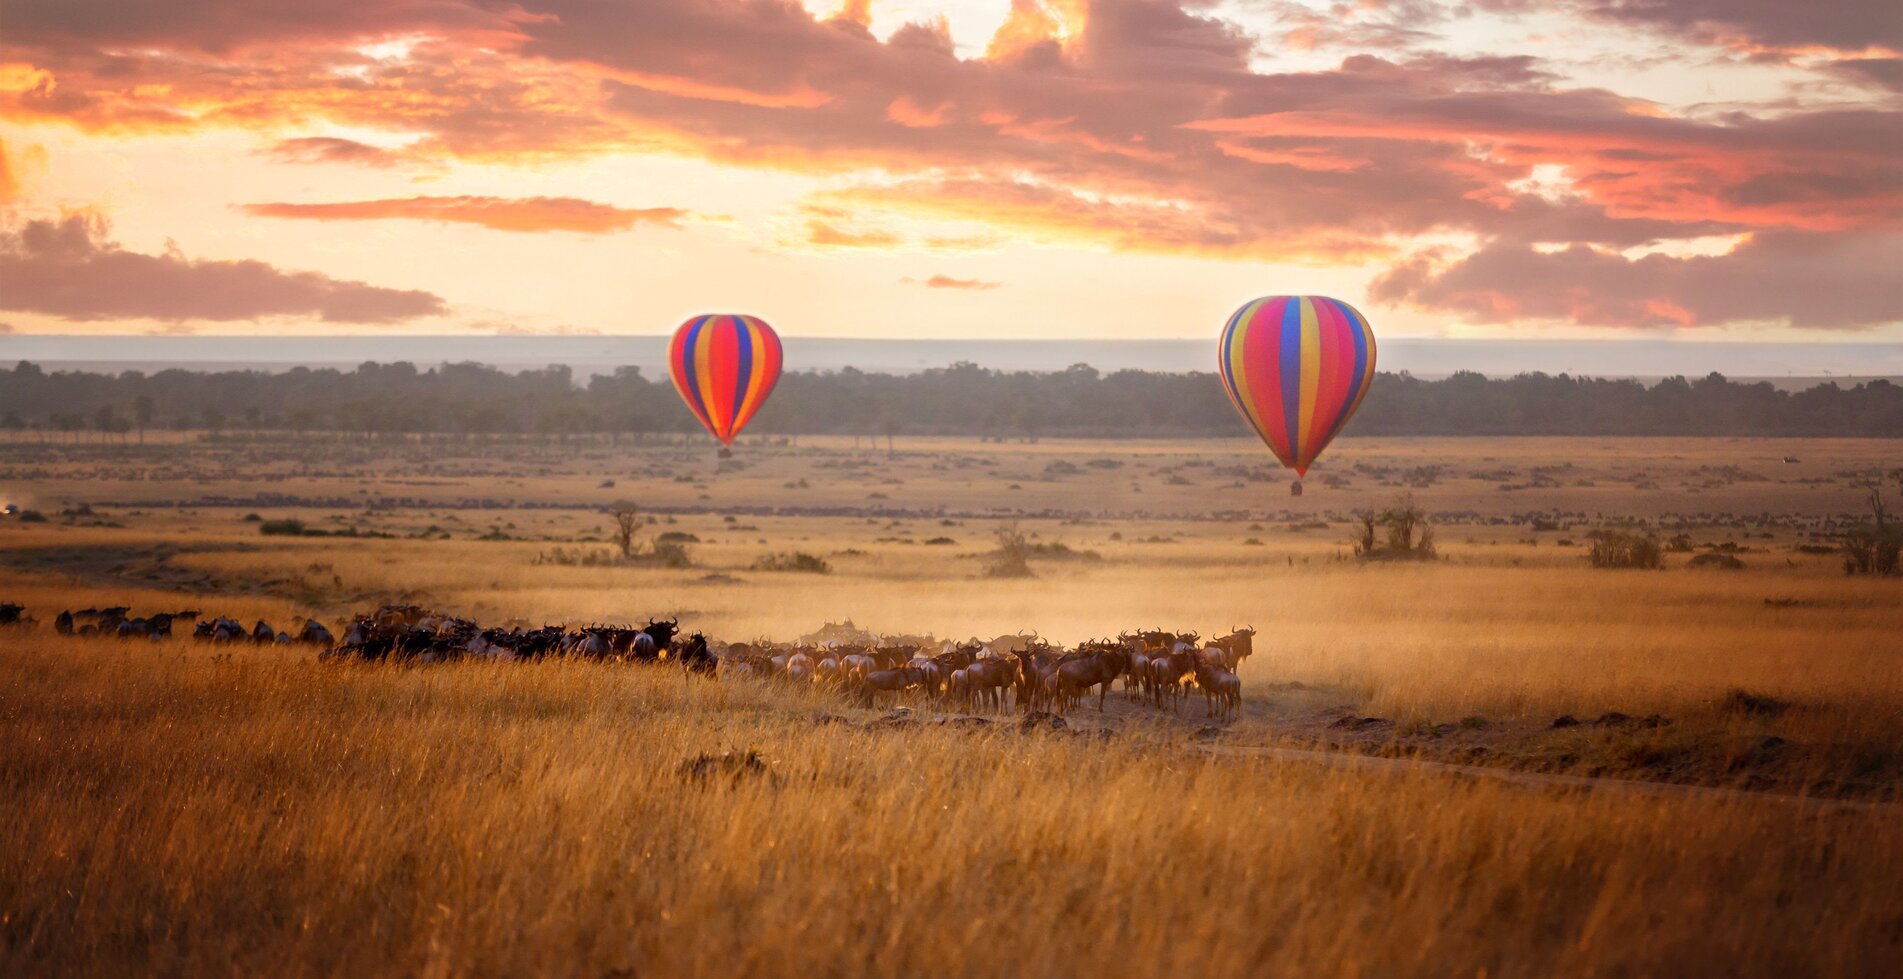 Serengeti National Parks